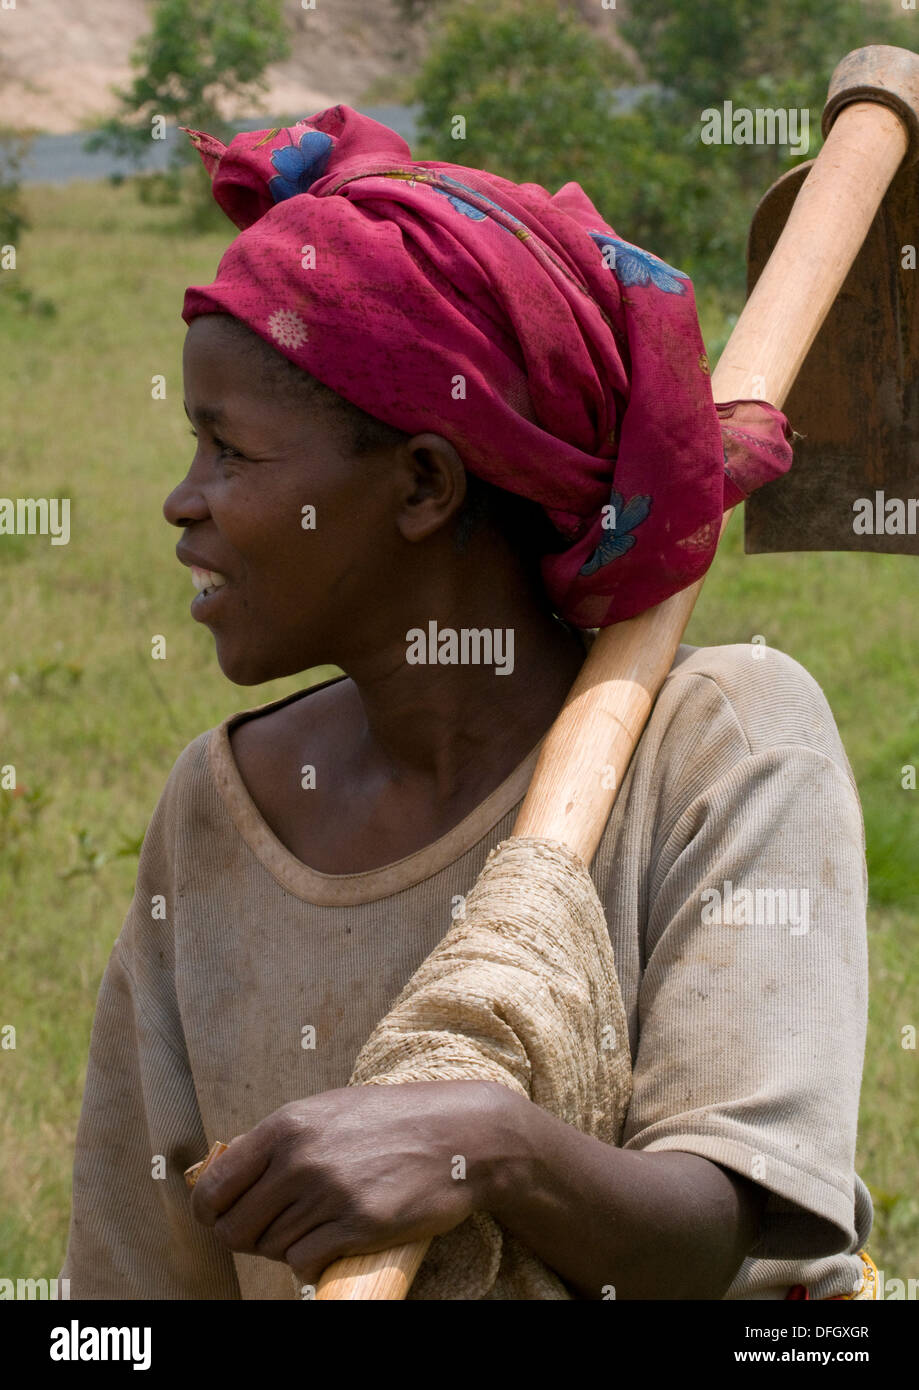 Femme rwandaise, ouvrier avec sa pioche dans la main près de Gitarama Rwanda Afrique Centrale Banque D'Images